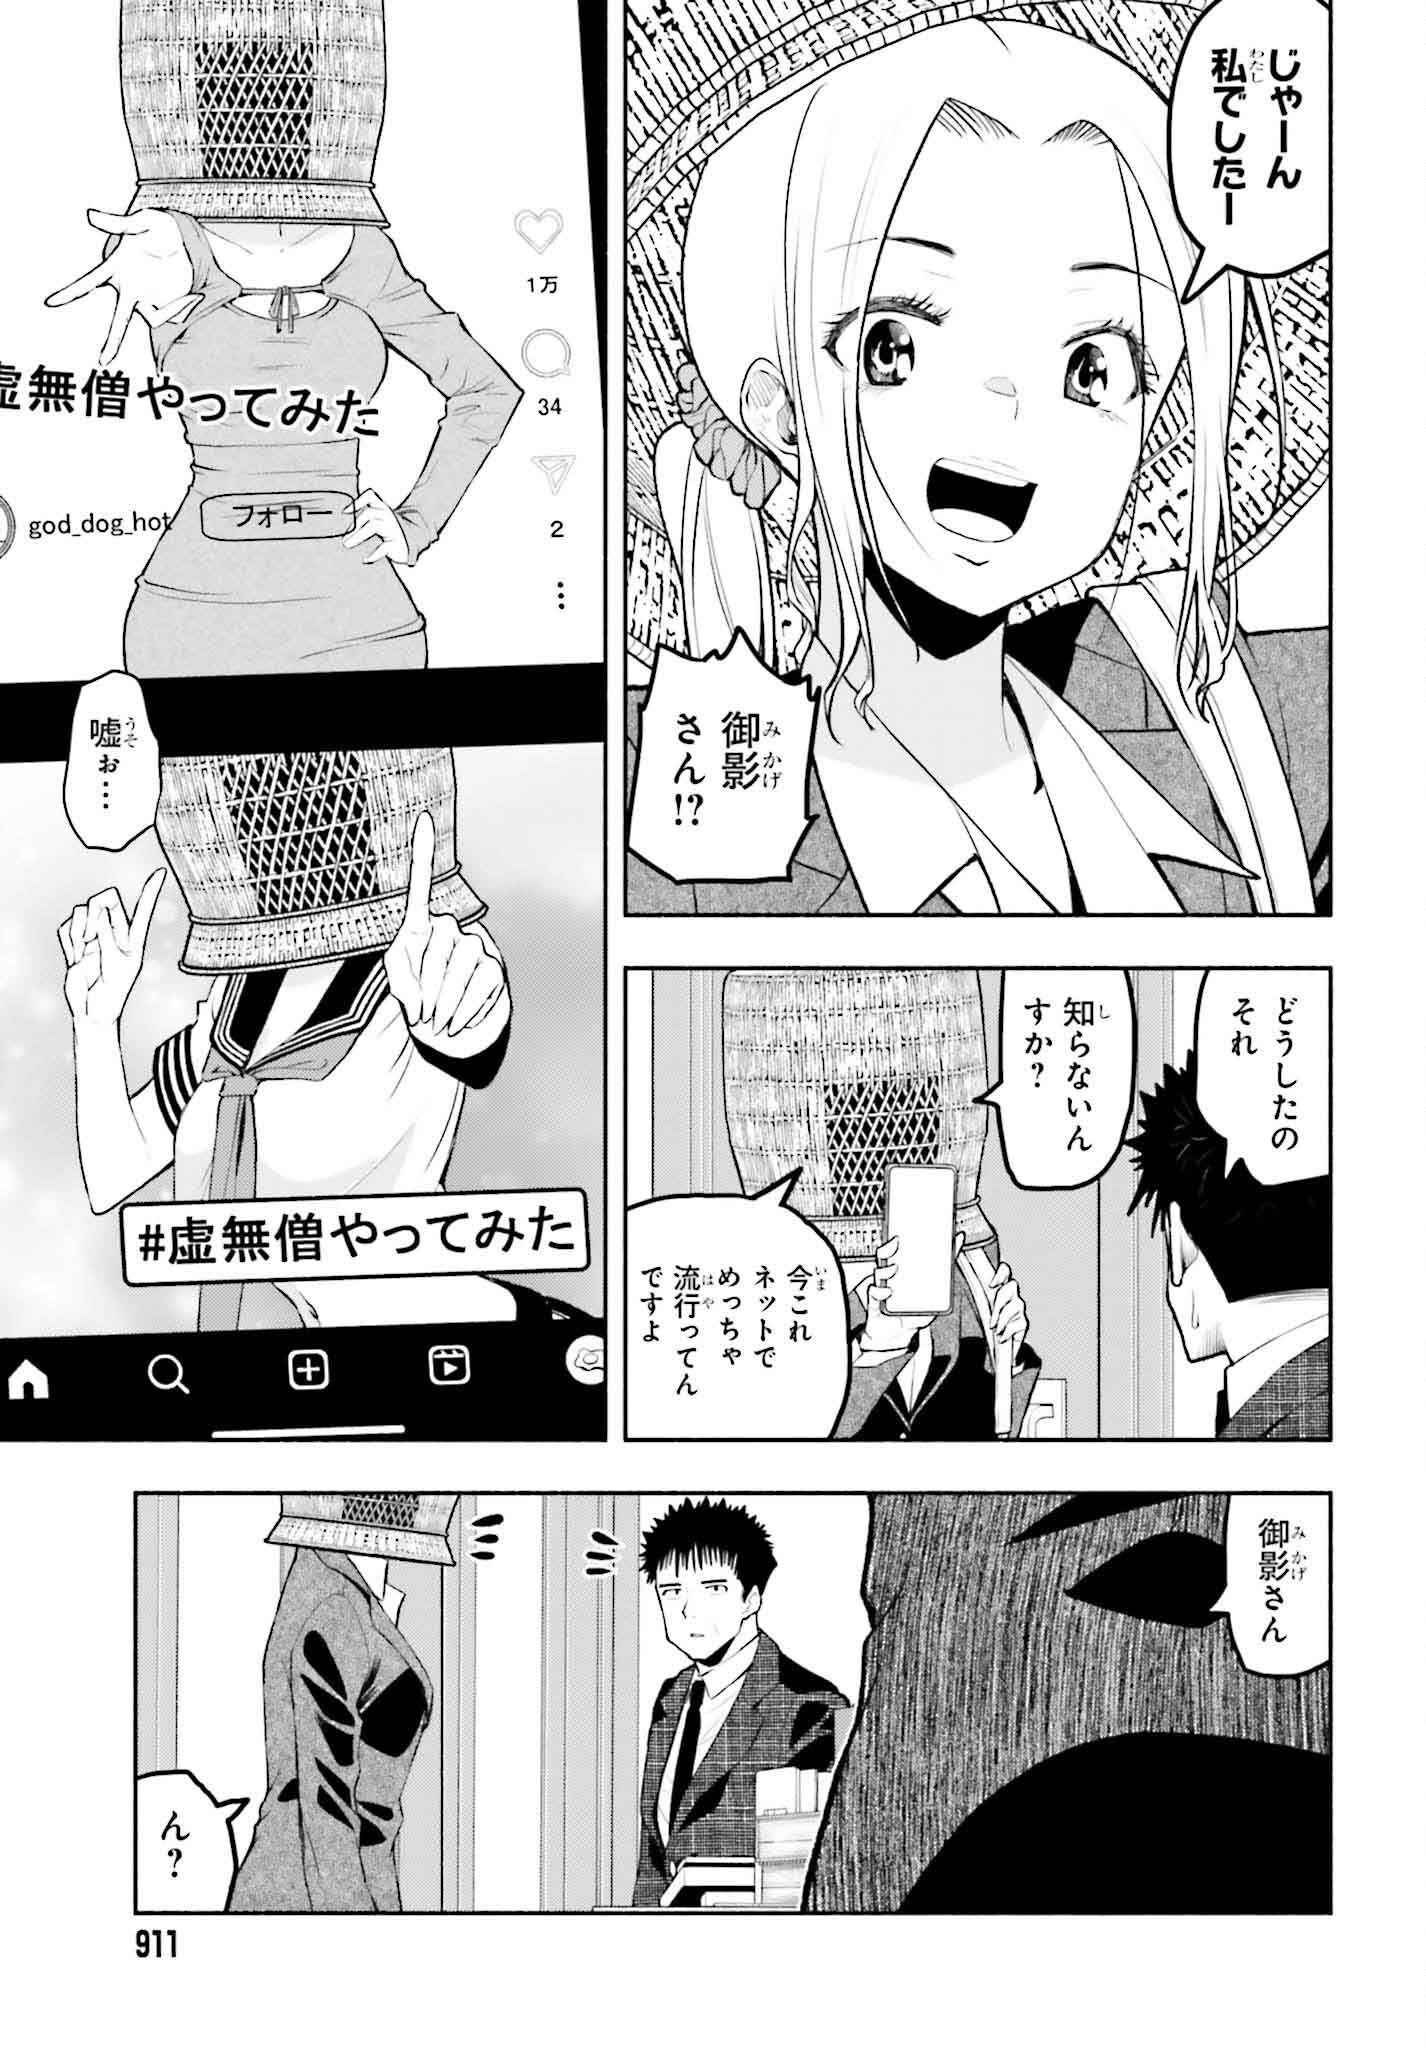 Omiai ni Sugoi Komyushou ga Kita - Chapter 17 - Page 9